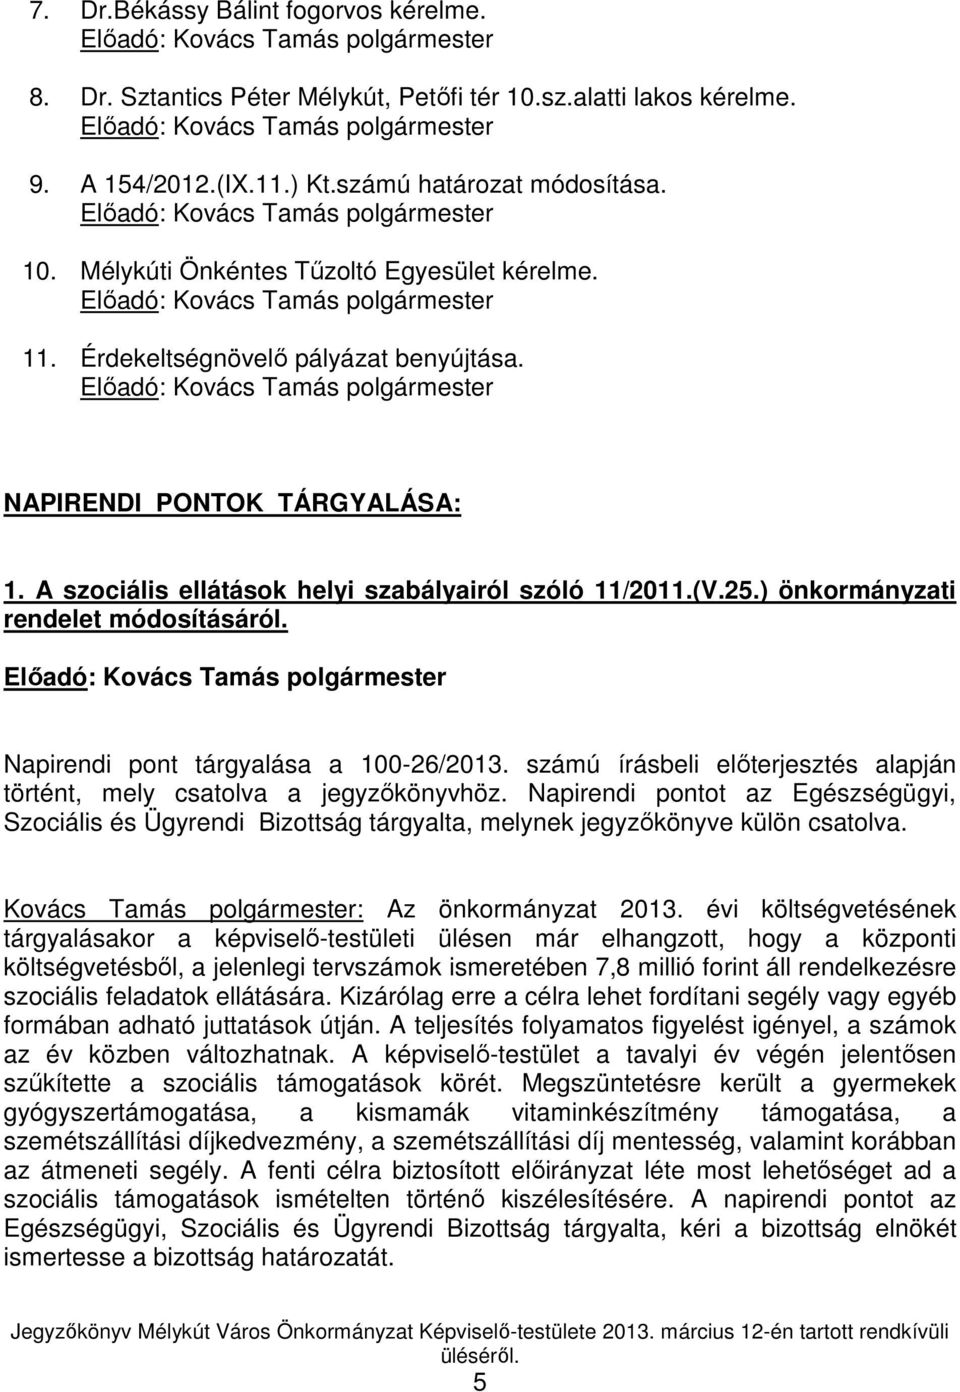 Elıadó: Kovács Tamás polgármester NAPIRENDI PONTOK TÁRGYALÁSA: 1. A szociális ellátások helyi szabályairól szóló 11/2011.(V.25.) önkormányzati rendelet módosításáról.